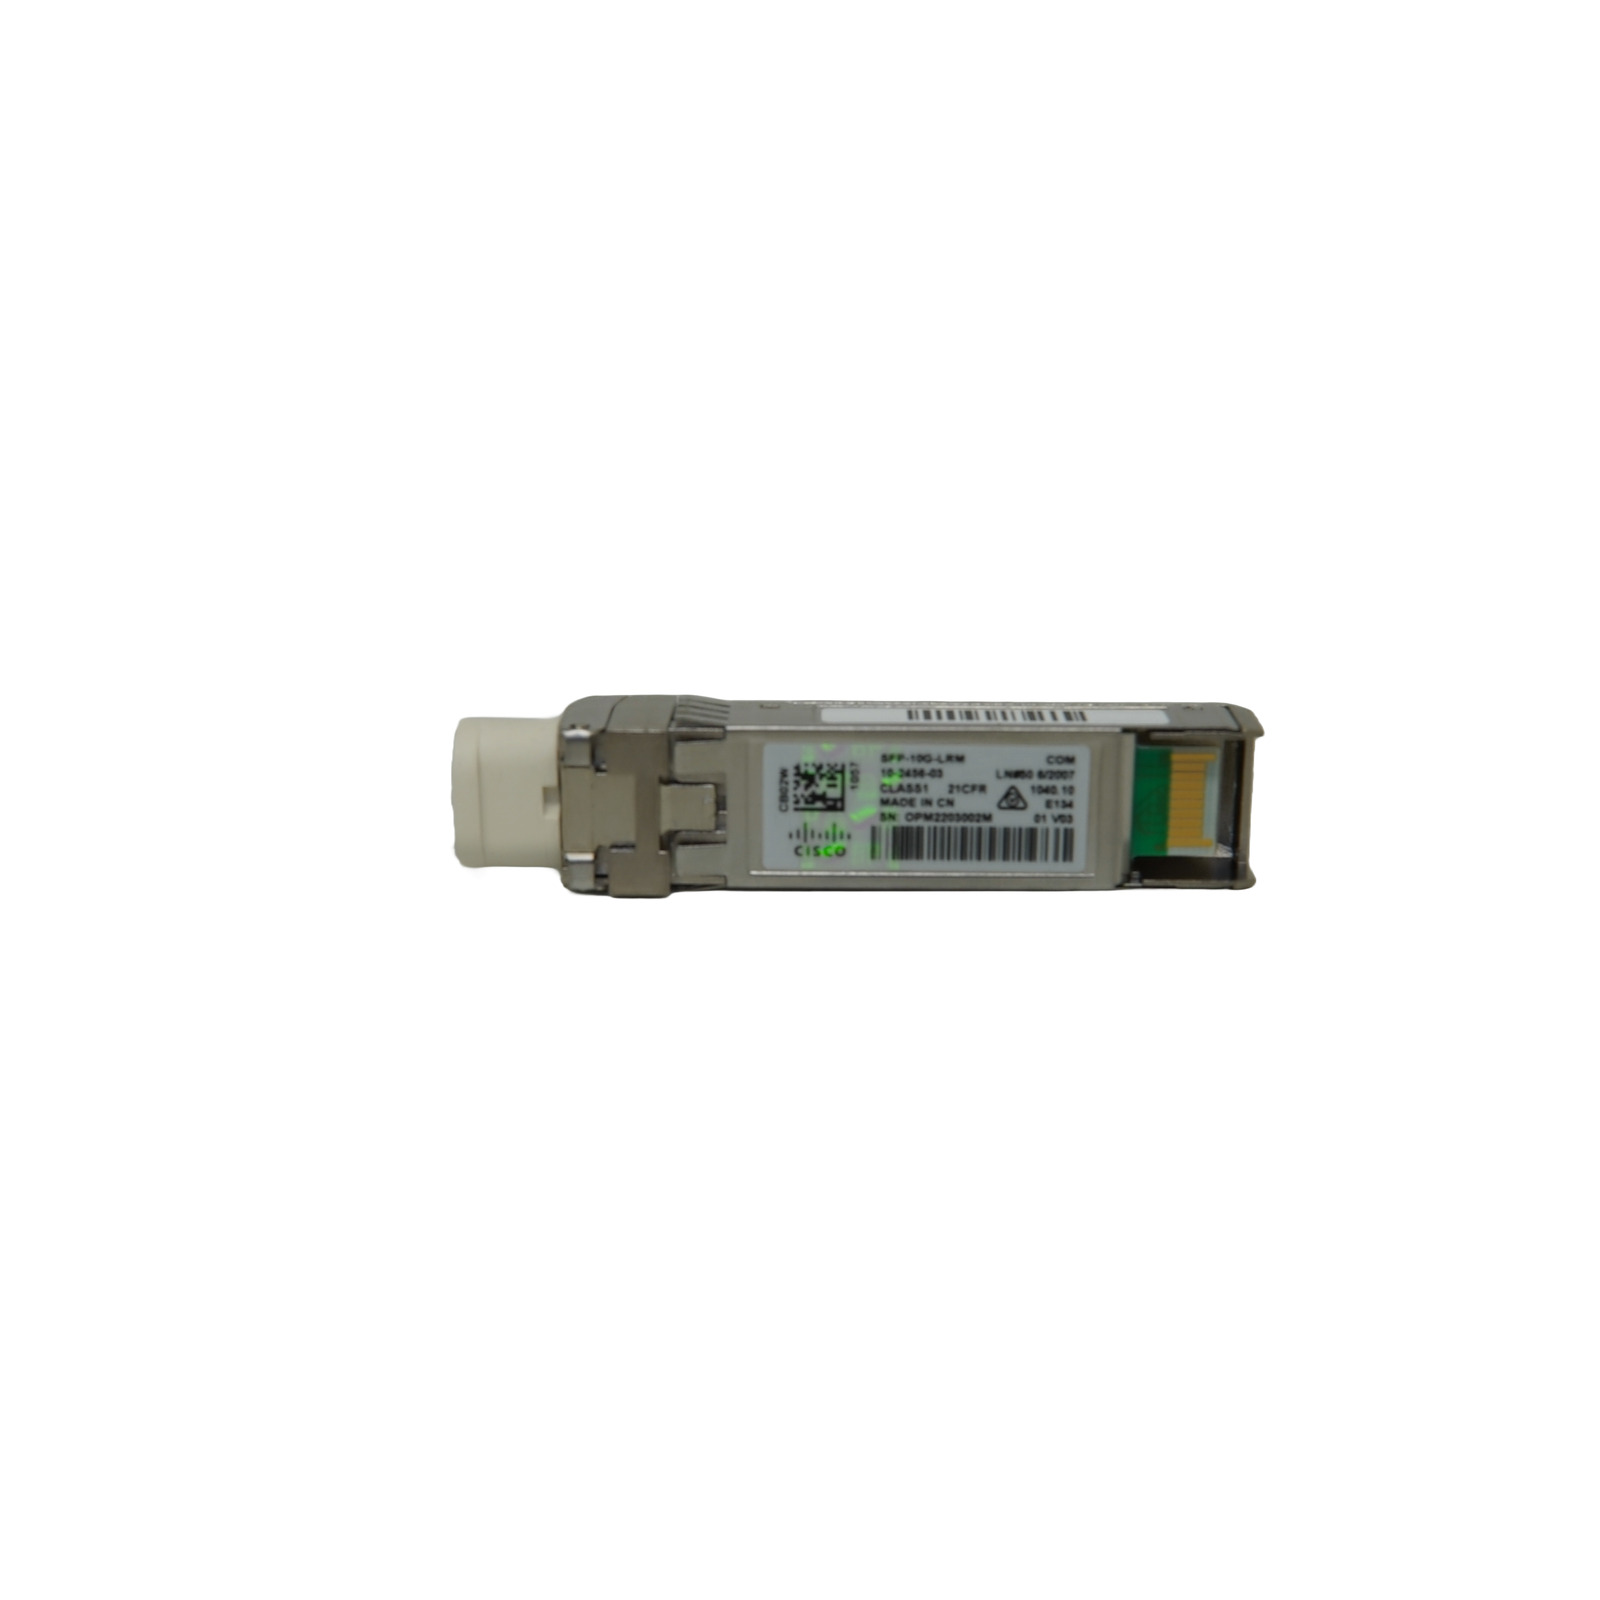 Cisco 10-2456-03 Genuine Cisco SFP-10G-LRM V03 10GBASE-LRM SFP+Transceiver